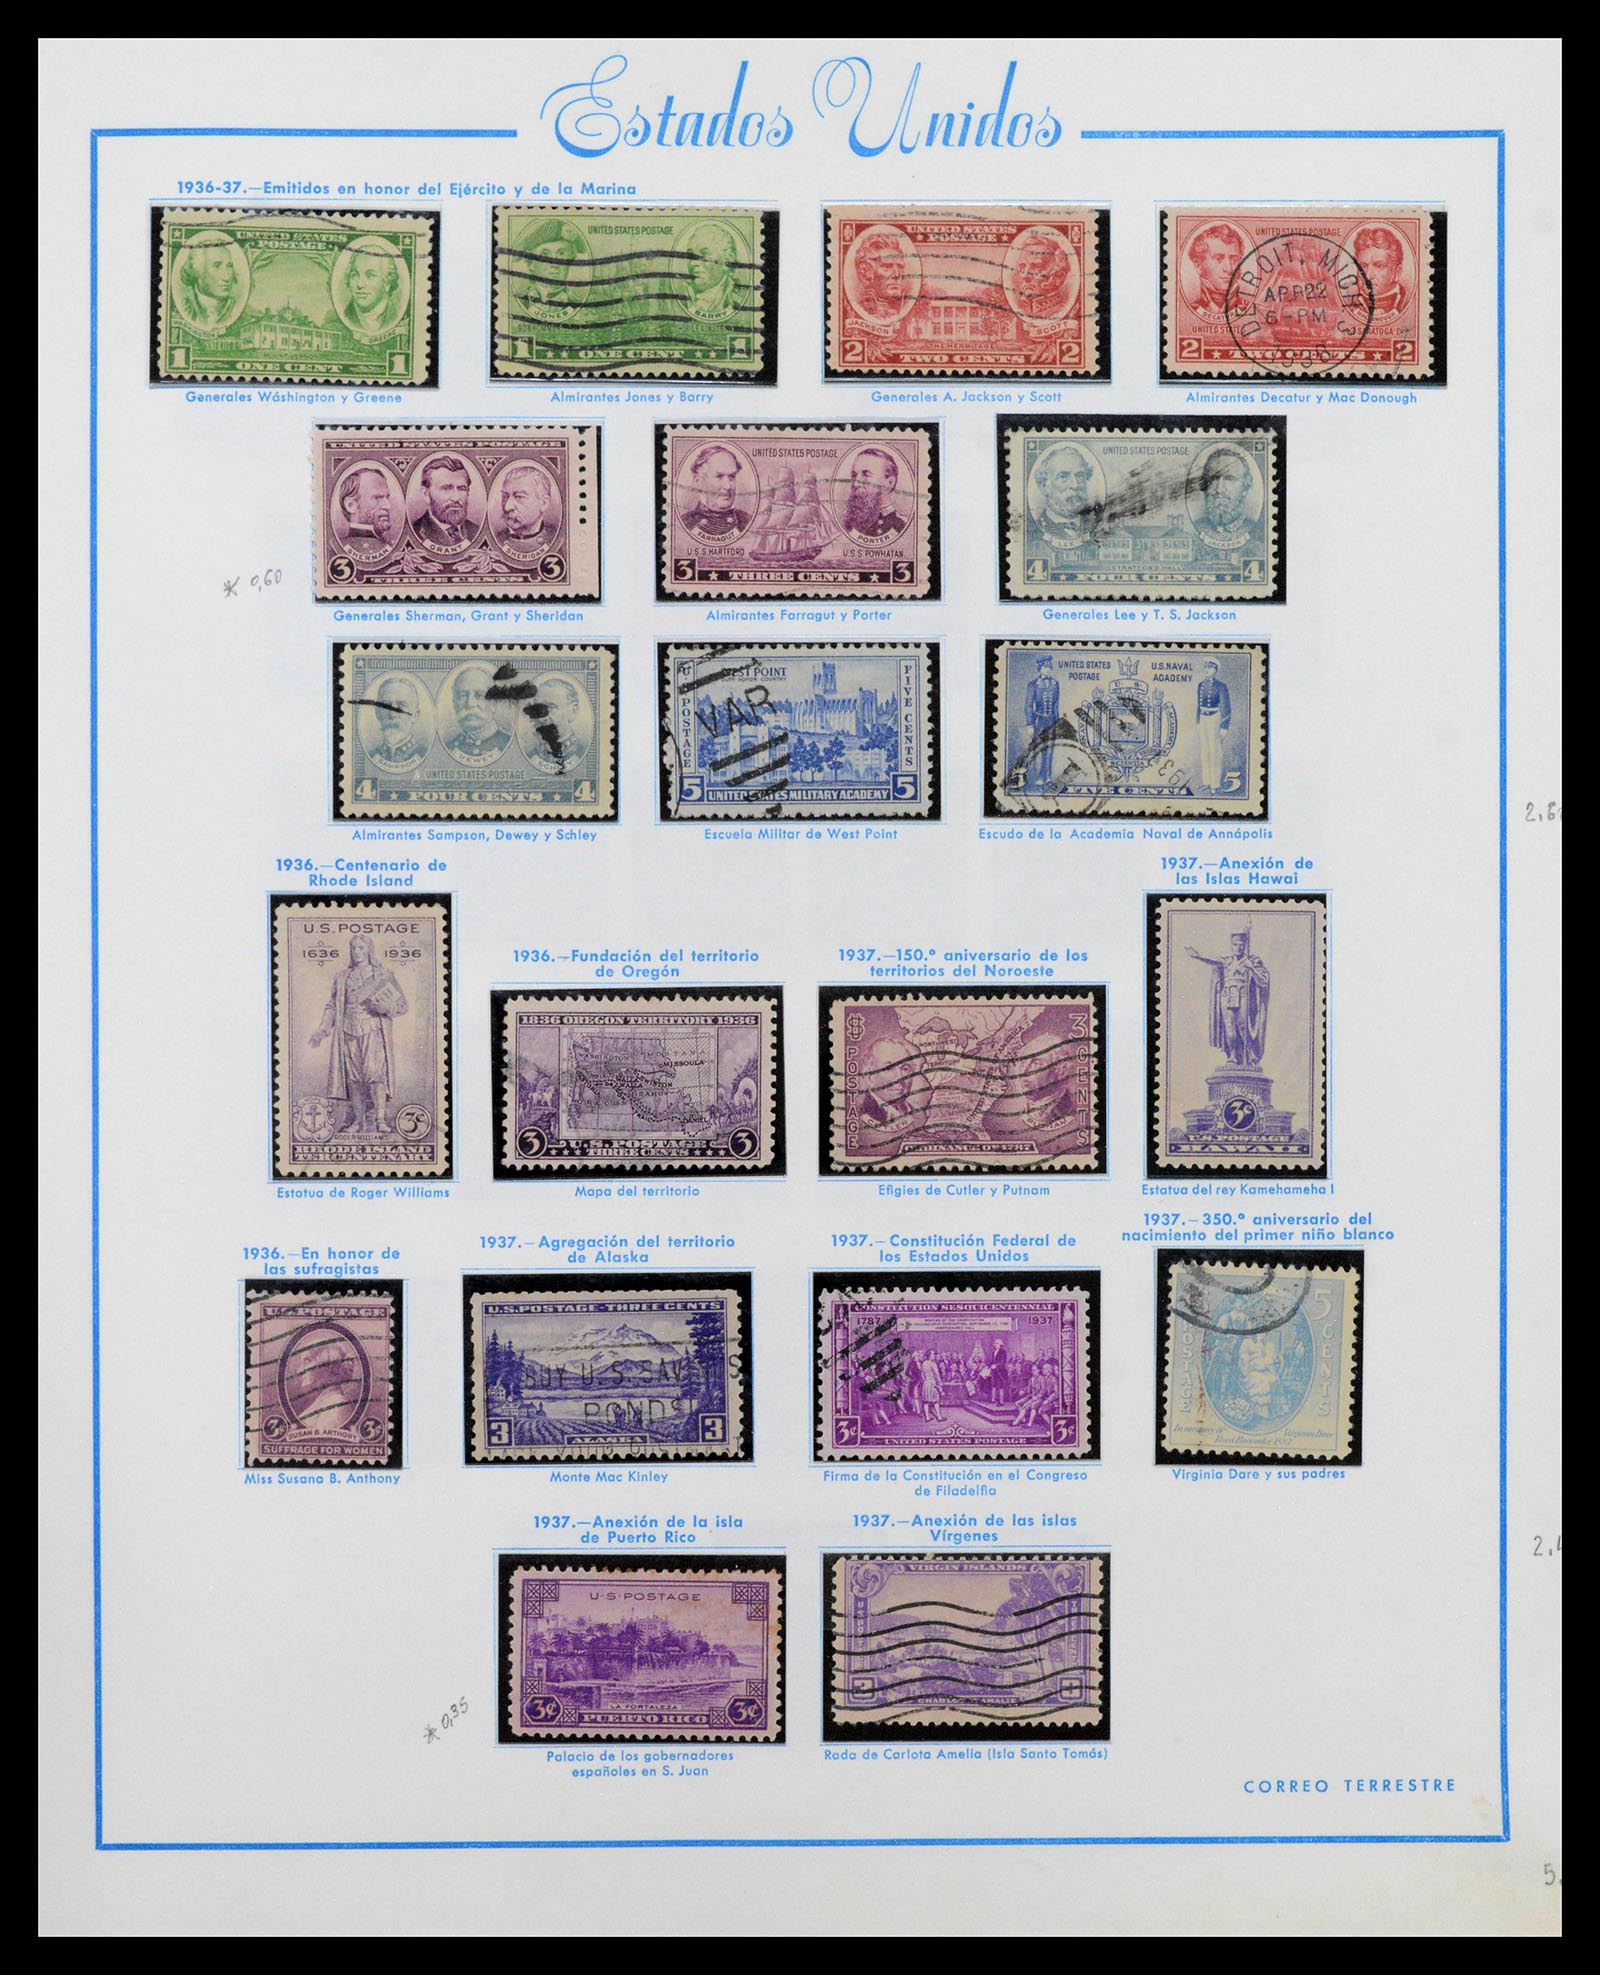 39190 0020 - Stamp collection 39190 USA 1851-1975.